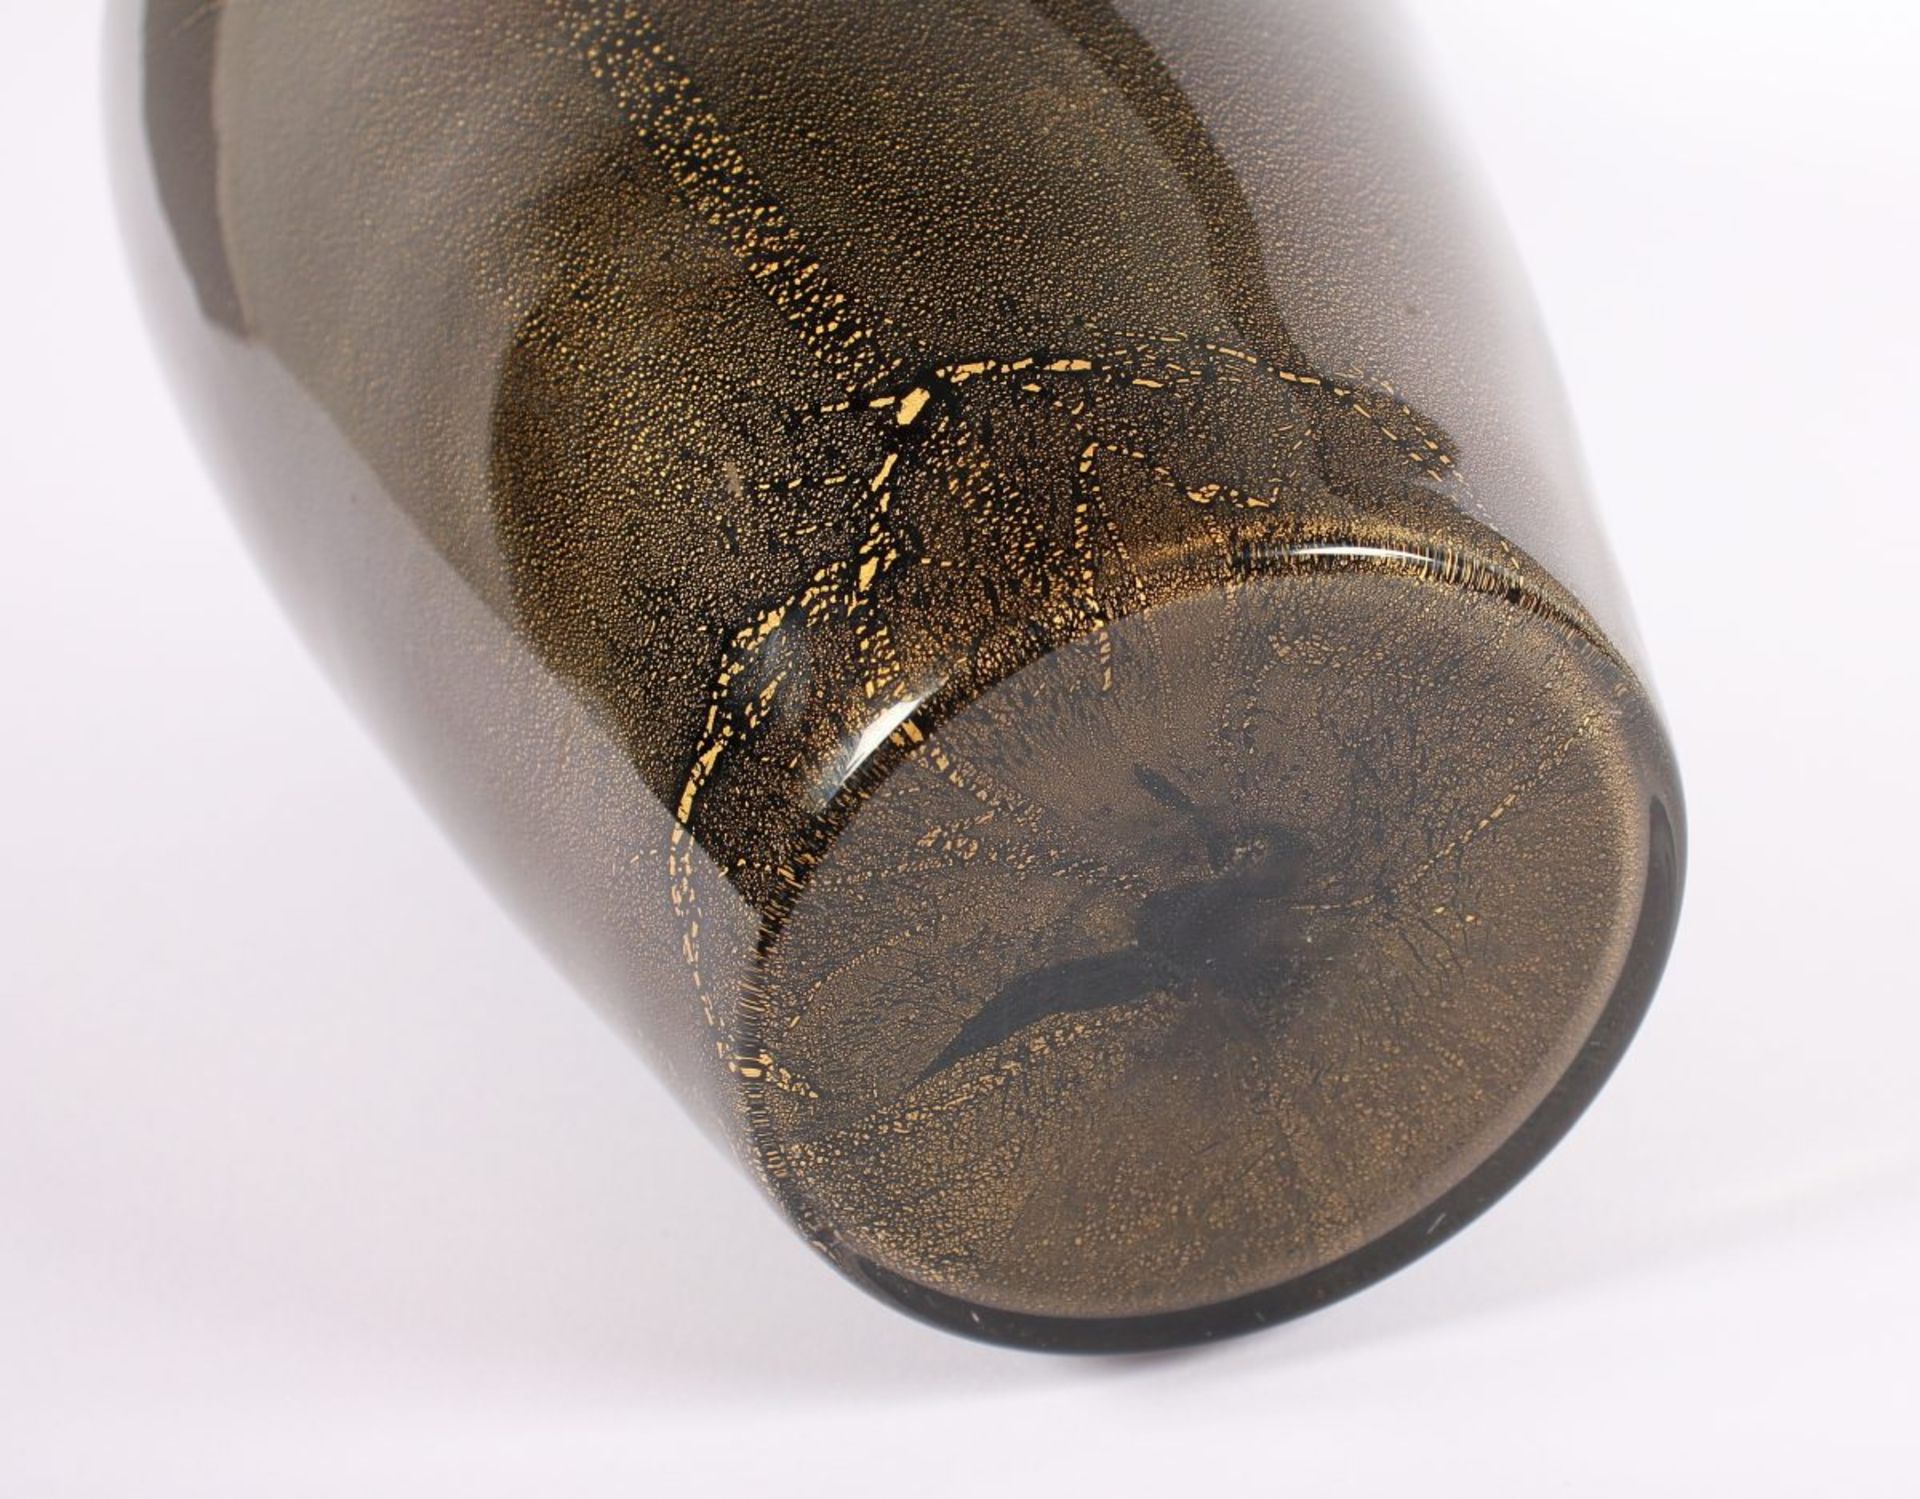 VASE, farbloses Glas, schwarzviolett hinterfangen mit Goldstaubeinschmelzungen, an der Mündung min. - Image 3 of 3